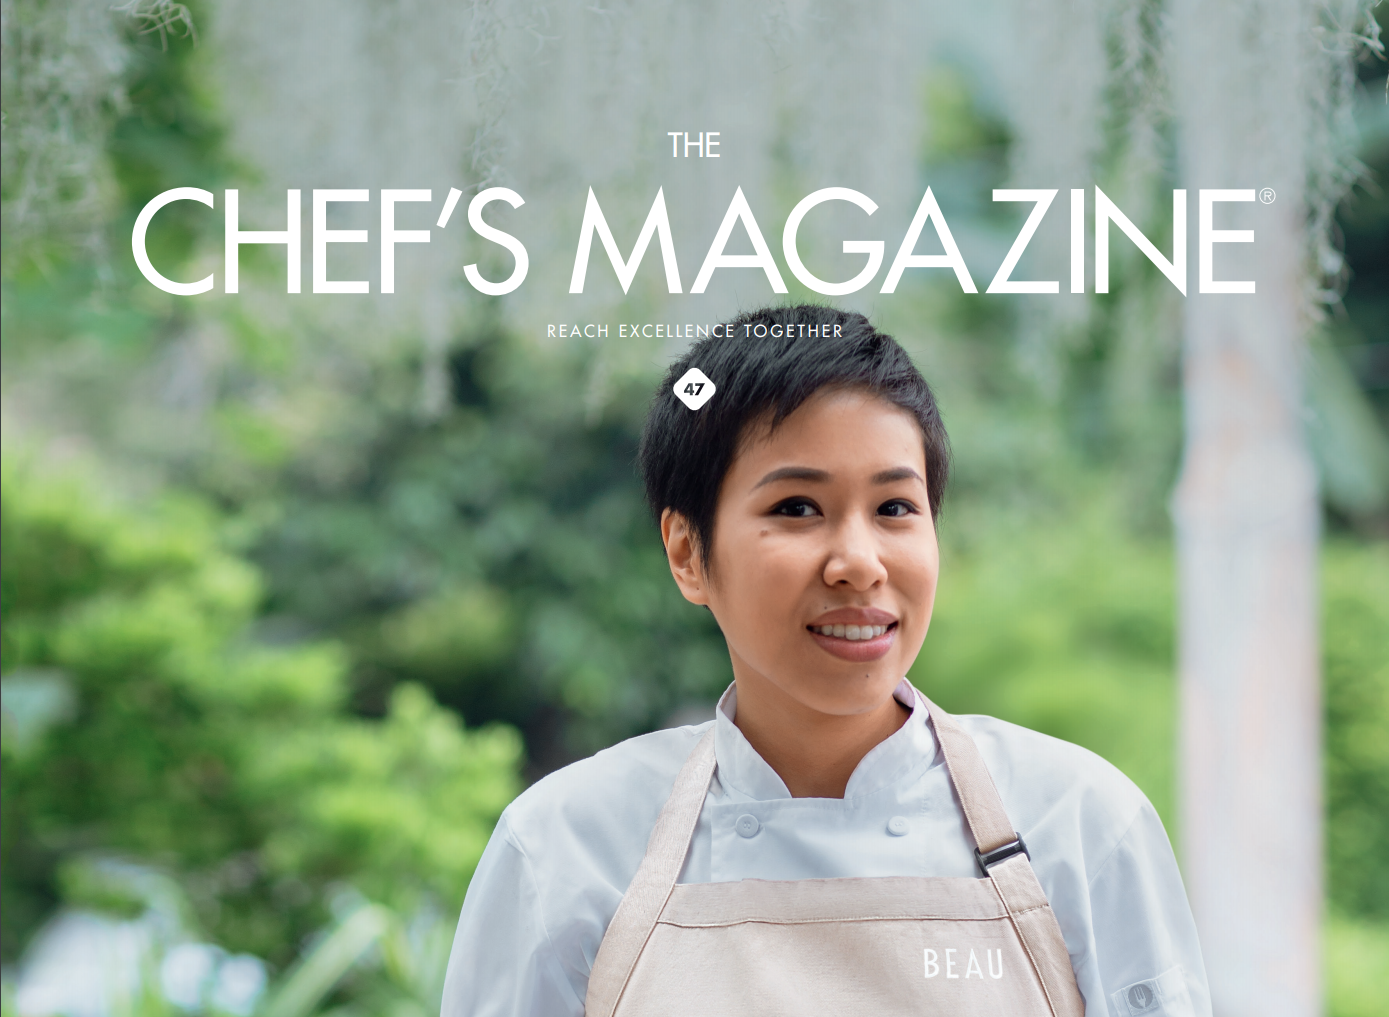 L’excellence par nature : découvrez notre nouveau Chef’s Magazine